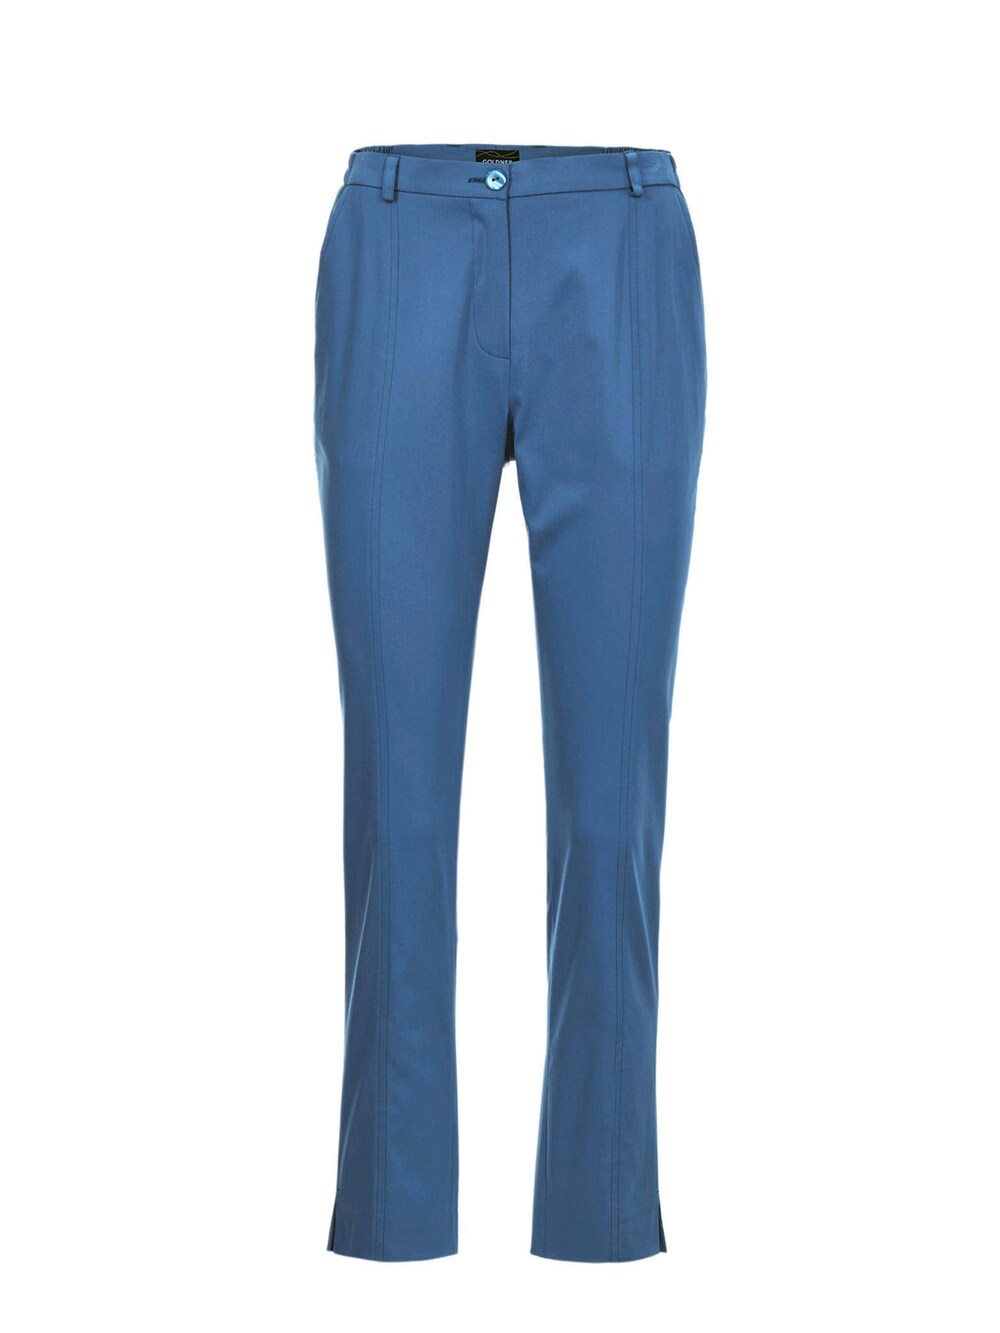 Обычные плиссированные брюки Goldner Anna, синий